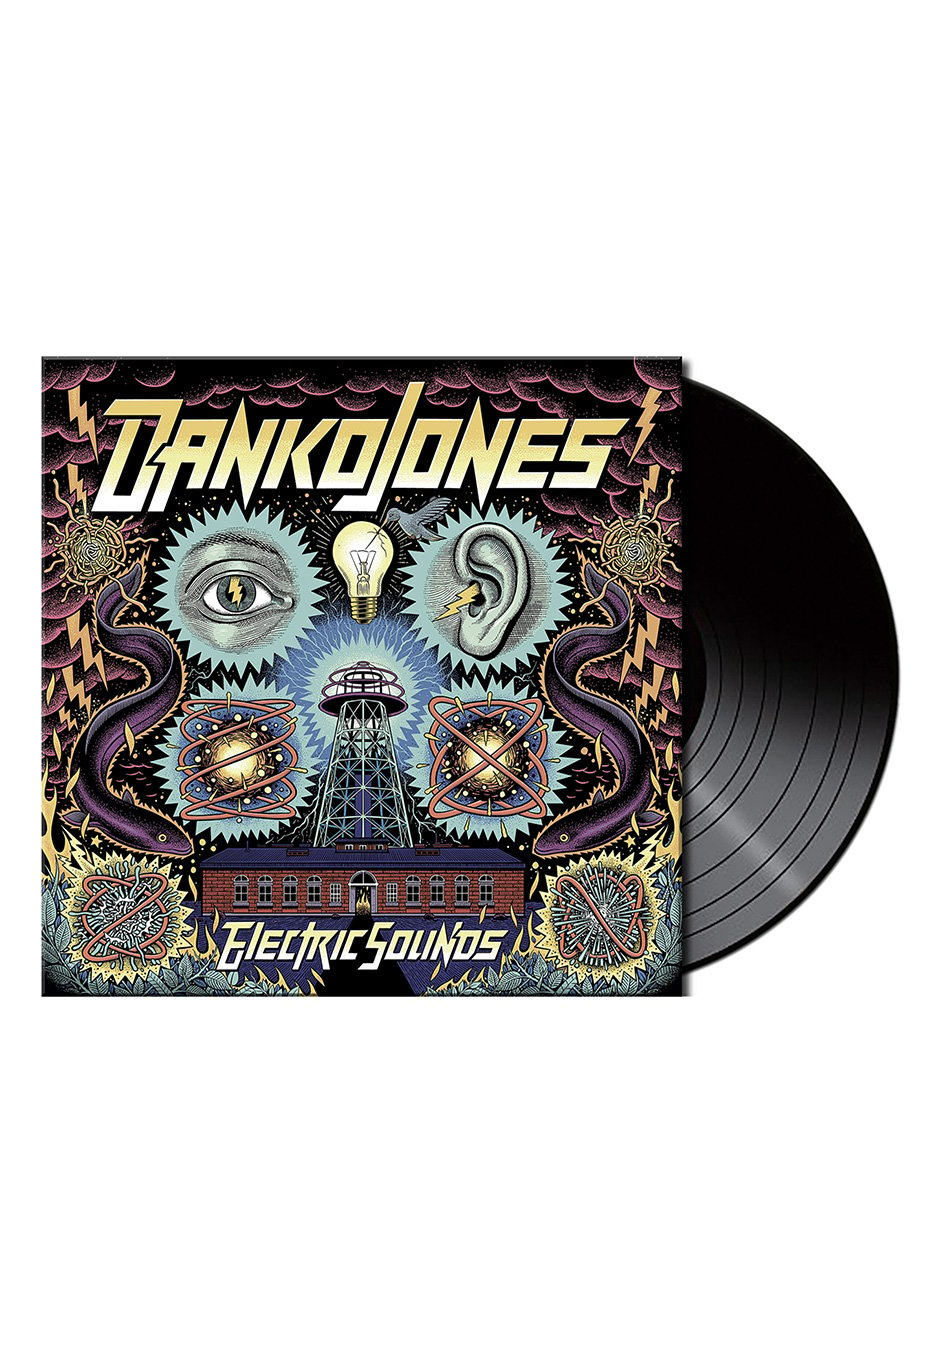 Danko Jones - Electric Sounds - Vinyl